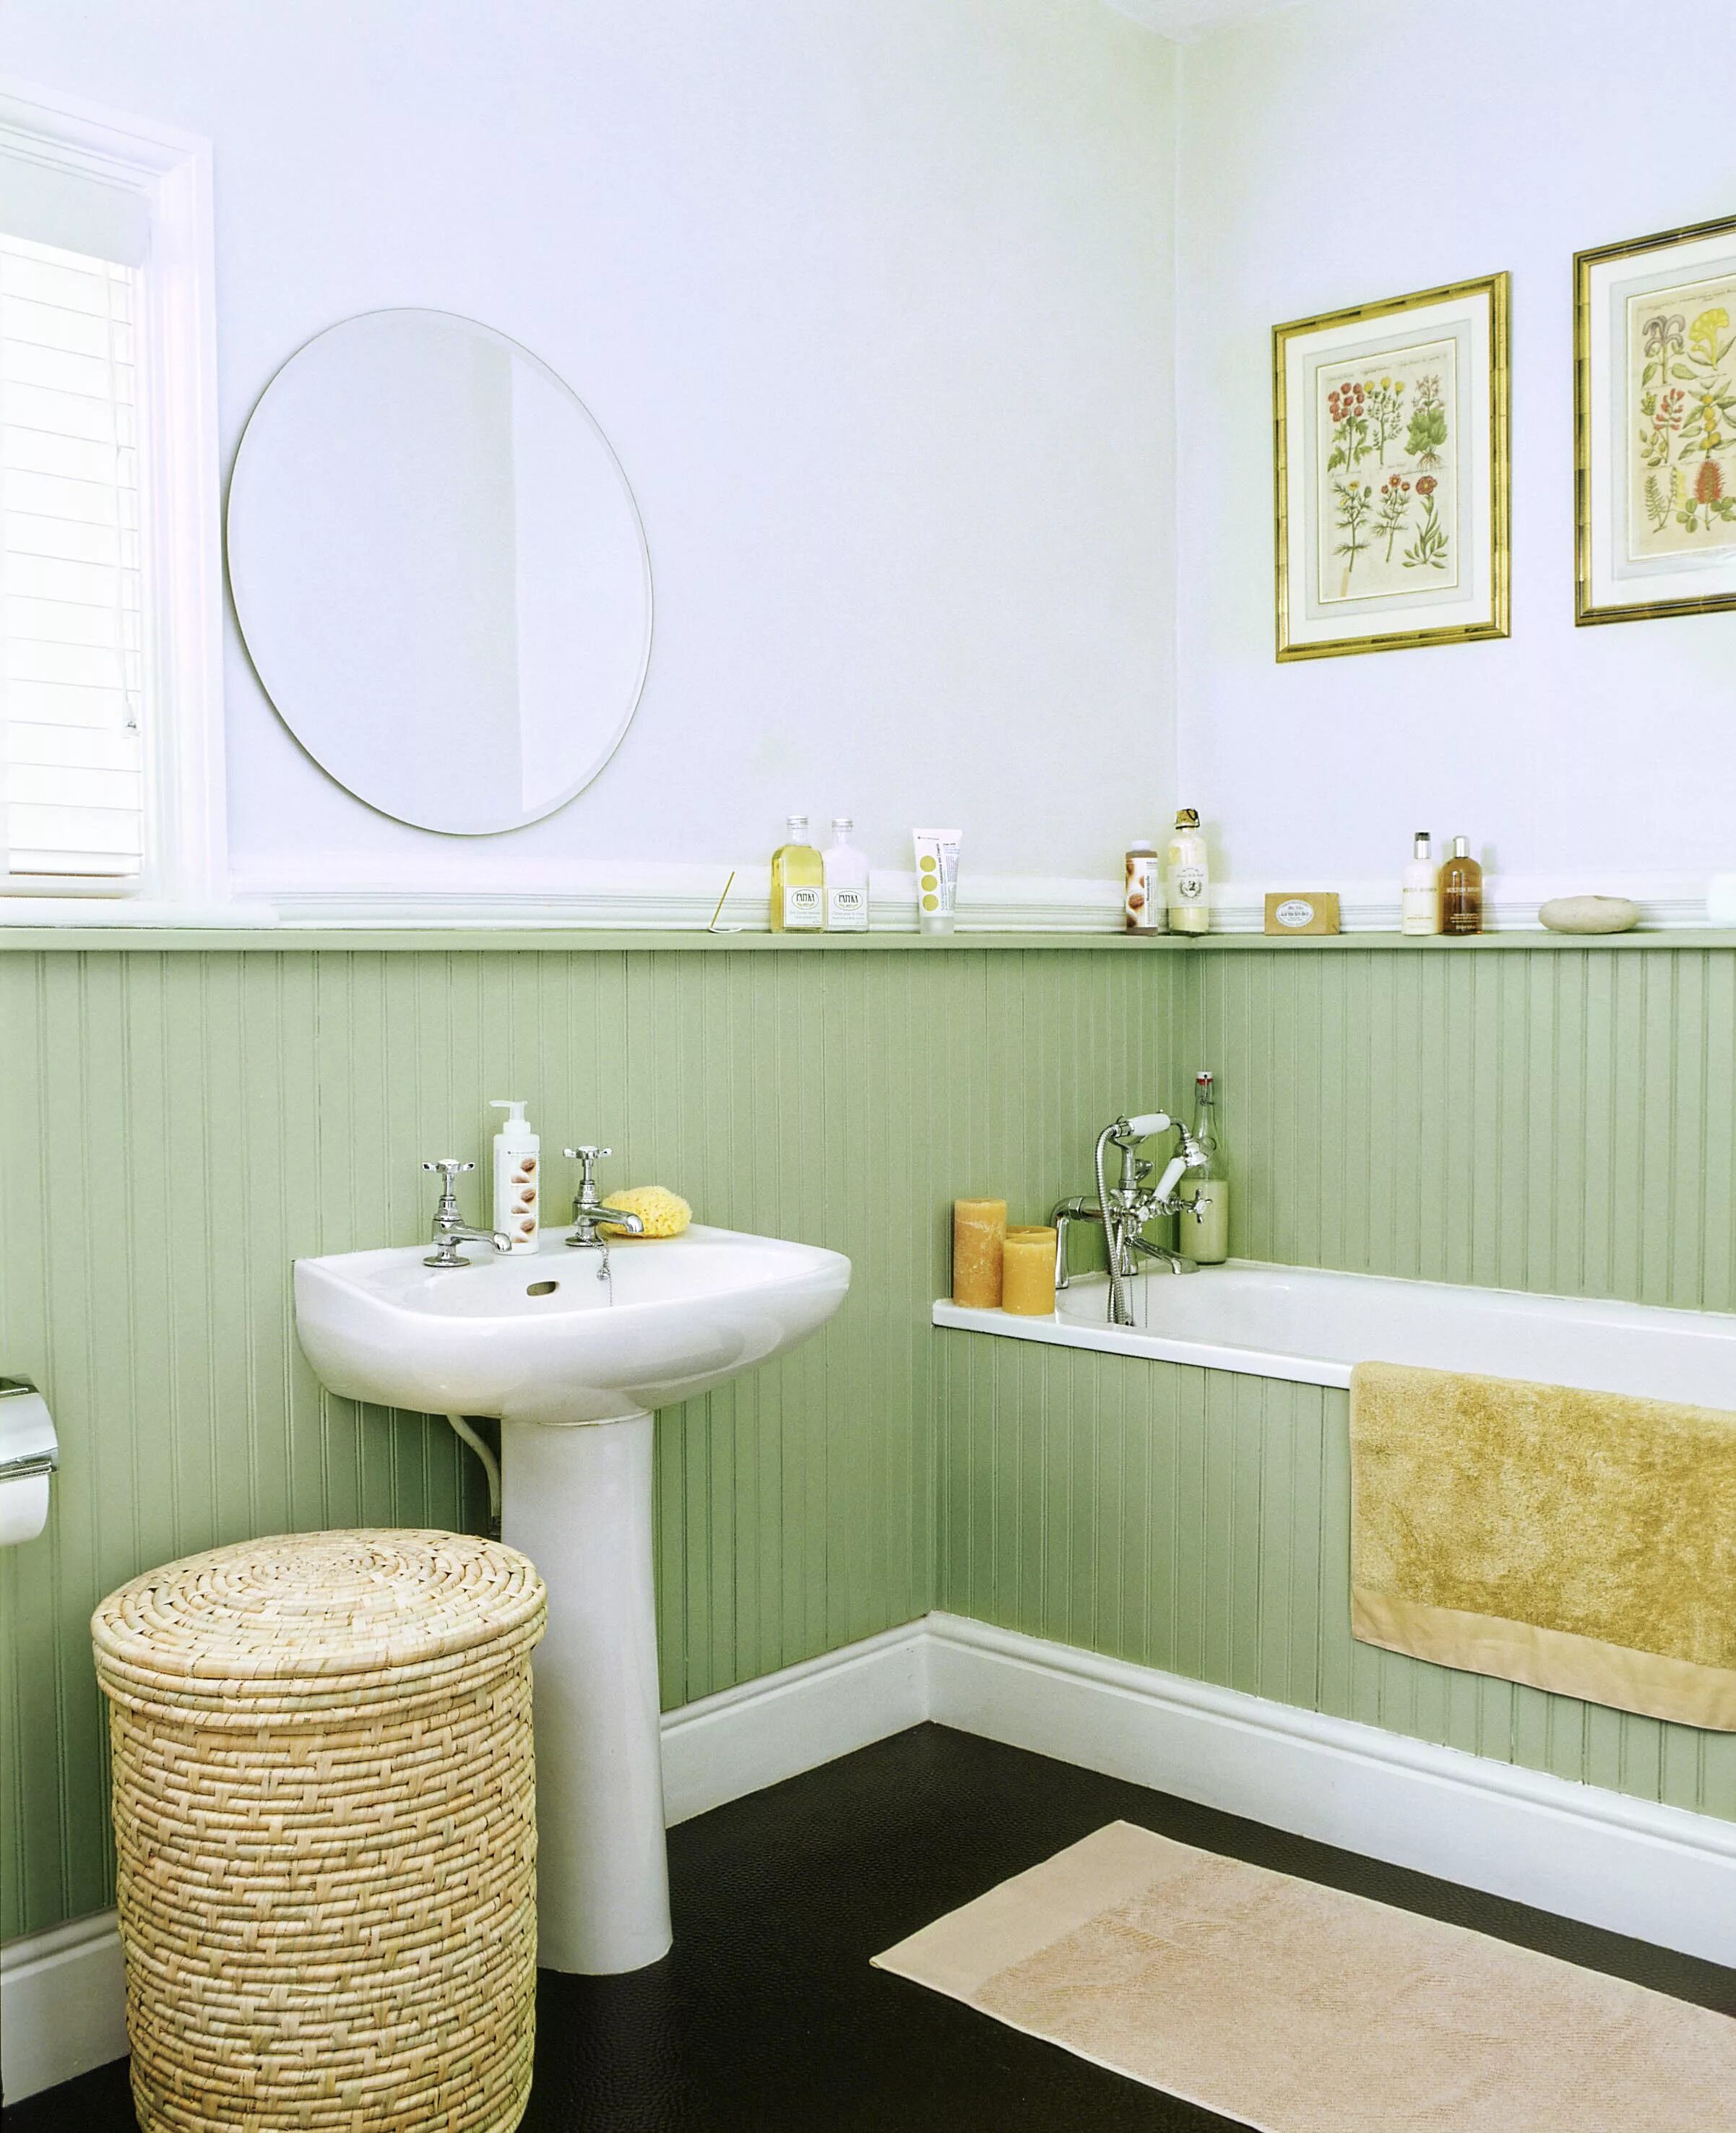 Стены в ванной. Отделка ванной комнаты плитка и краска. Стена в ванной. Фисташковая ванная комната. Комбинированная отделка ванной.